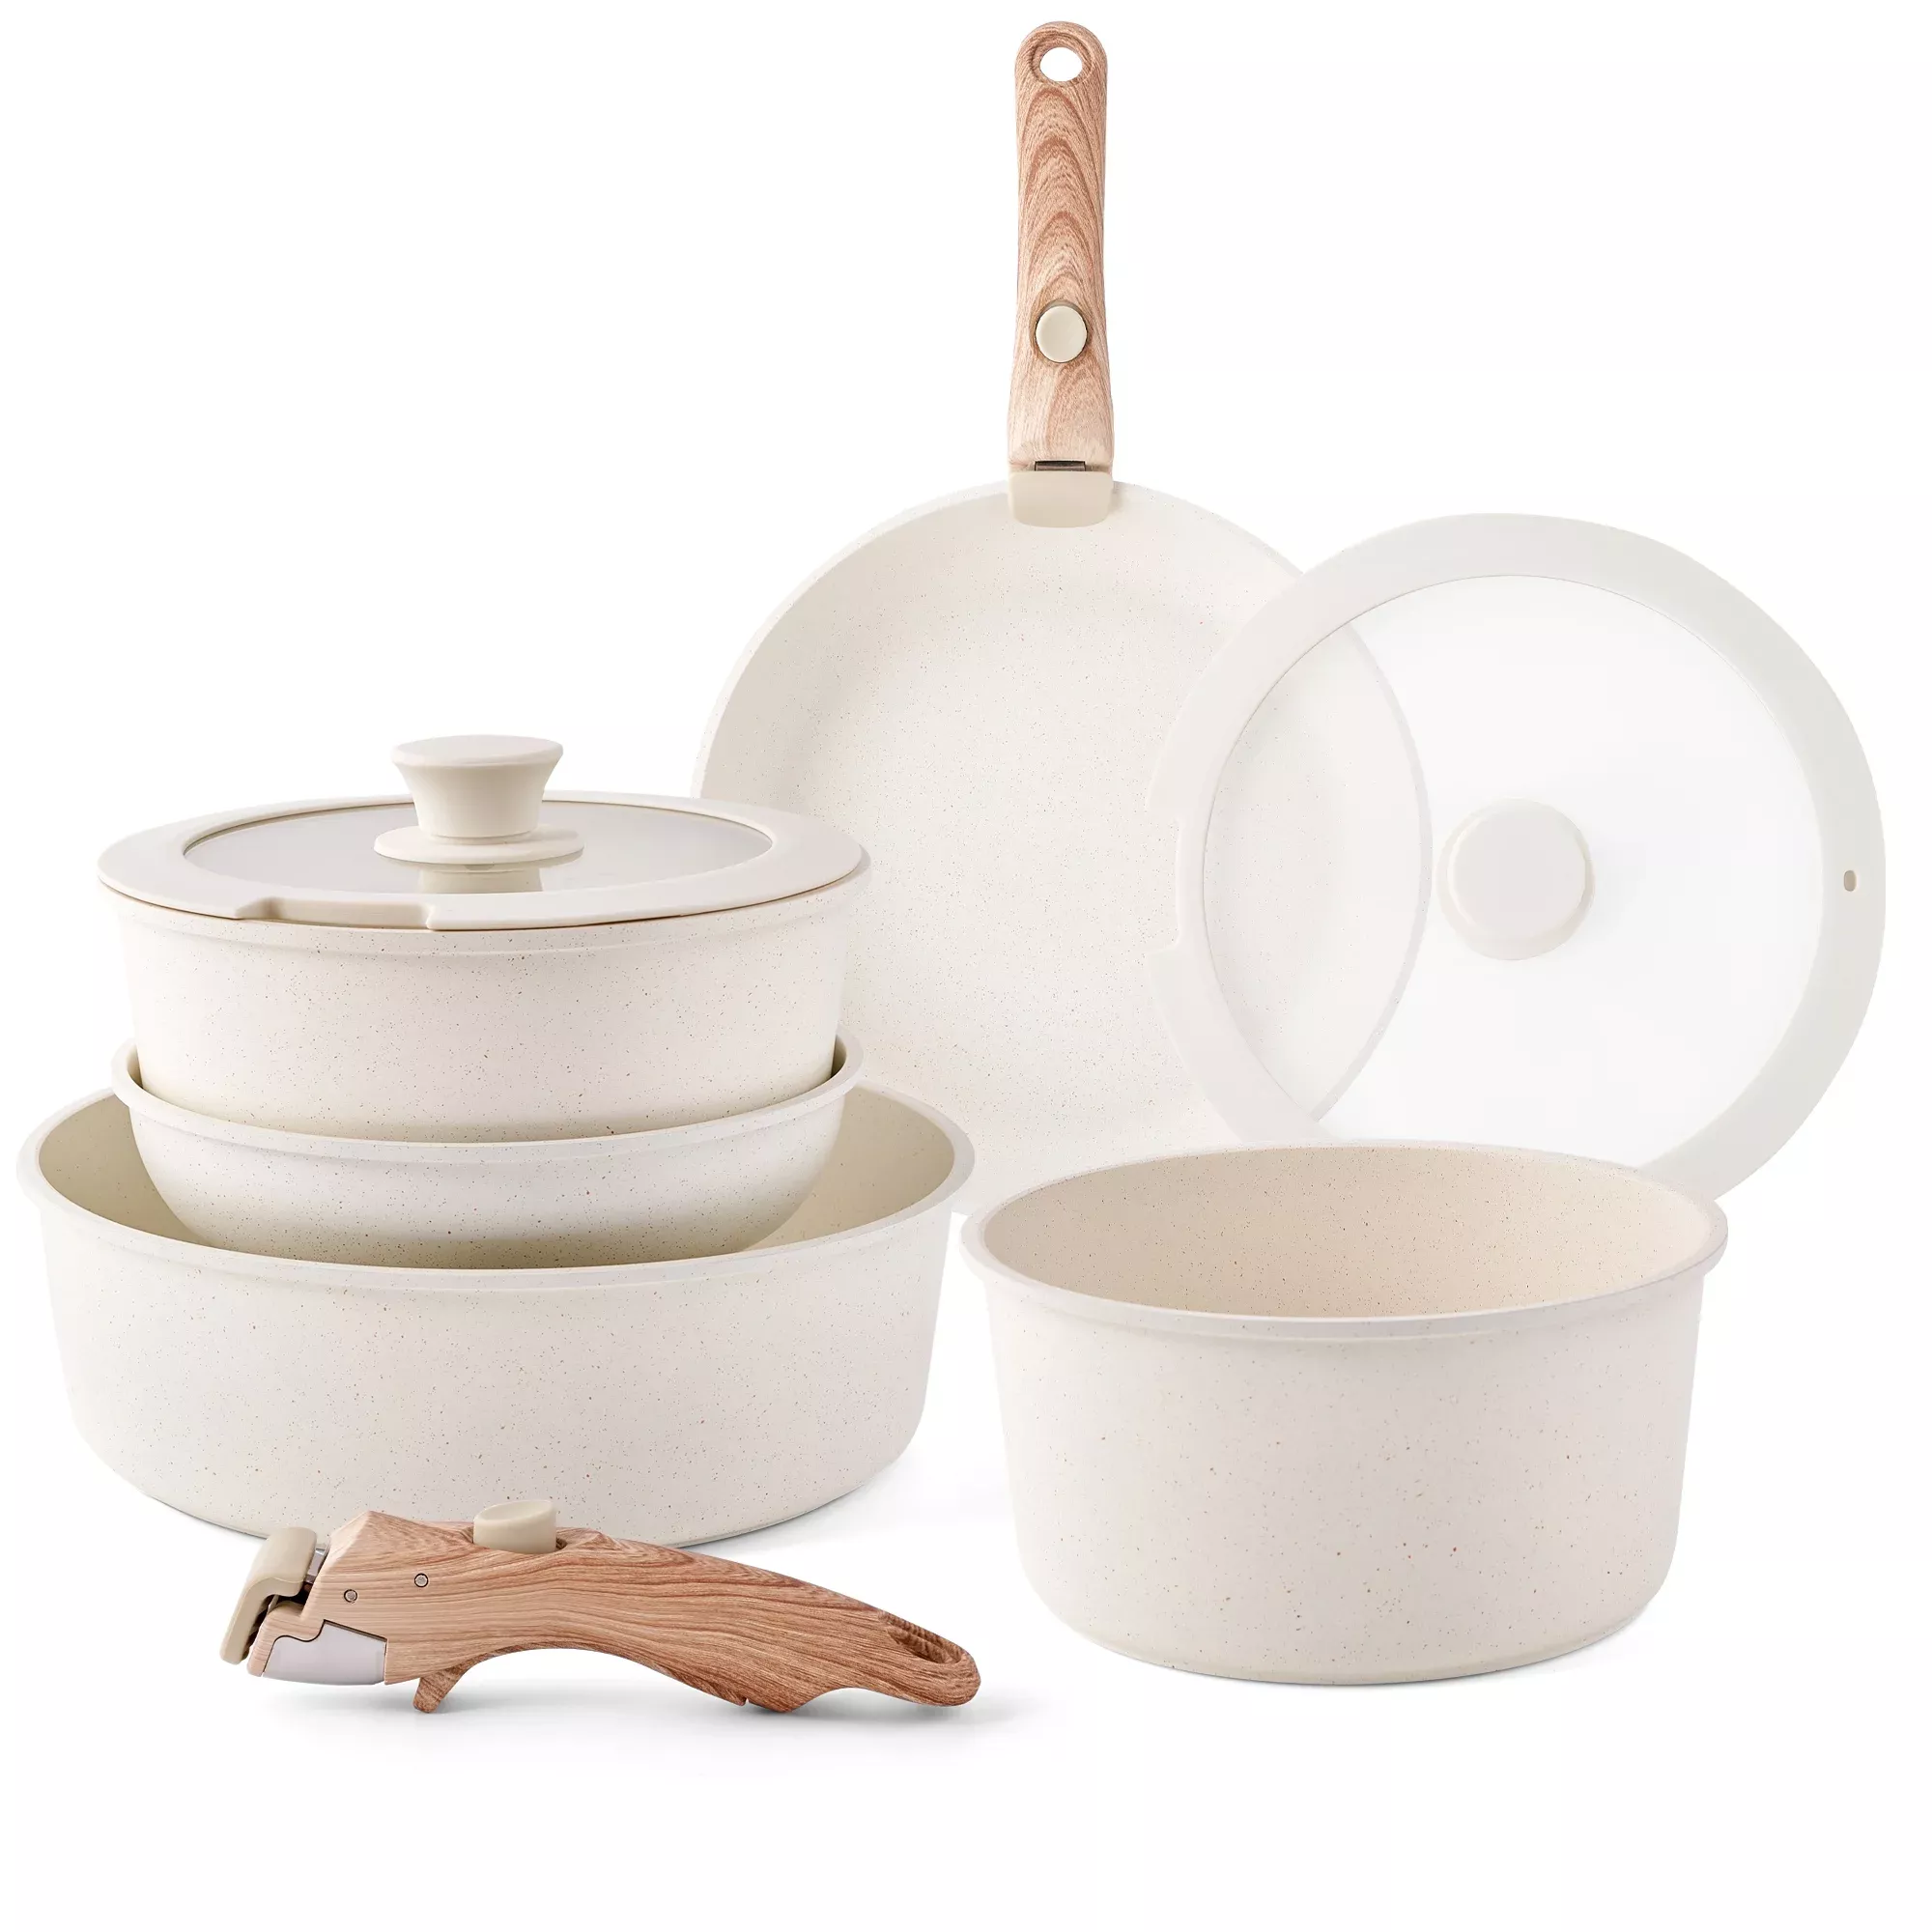 Pots and Pans Set Caannasweis Kitchen Nonstick Cookware Sets